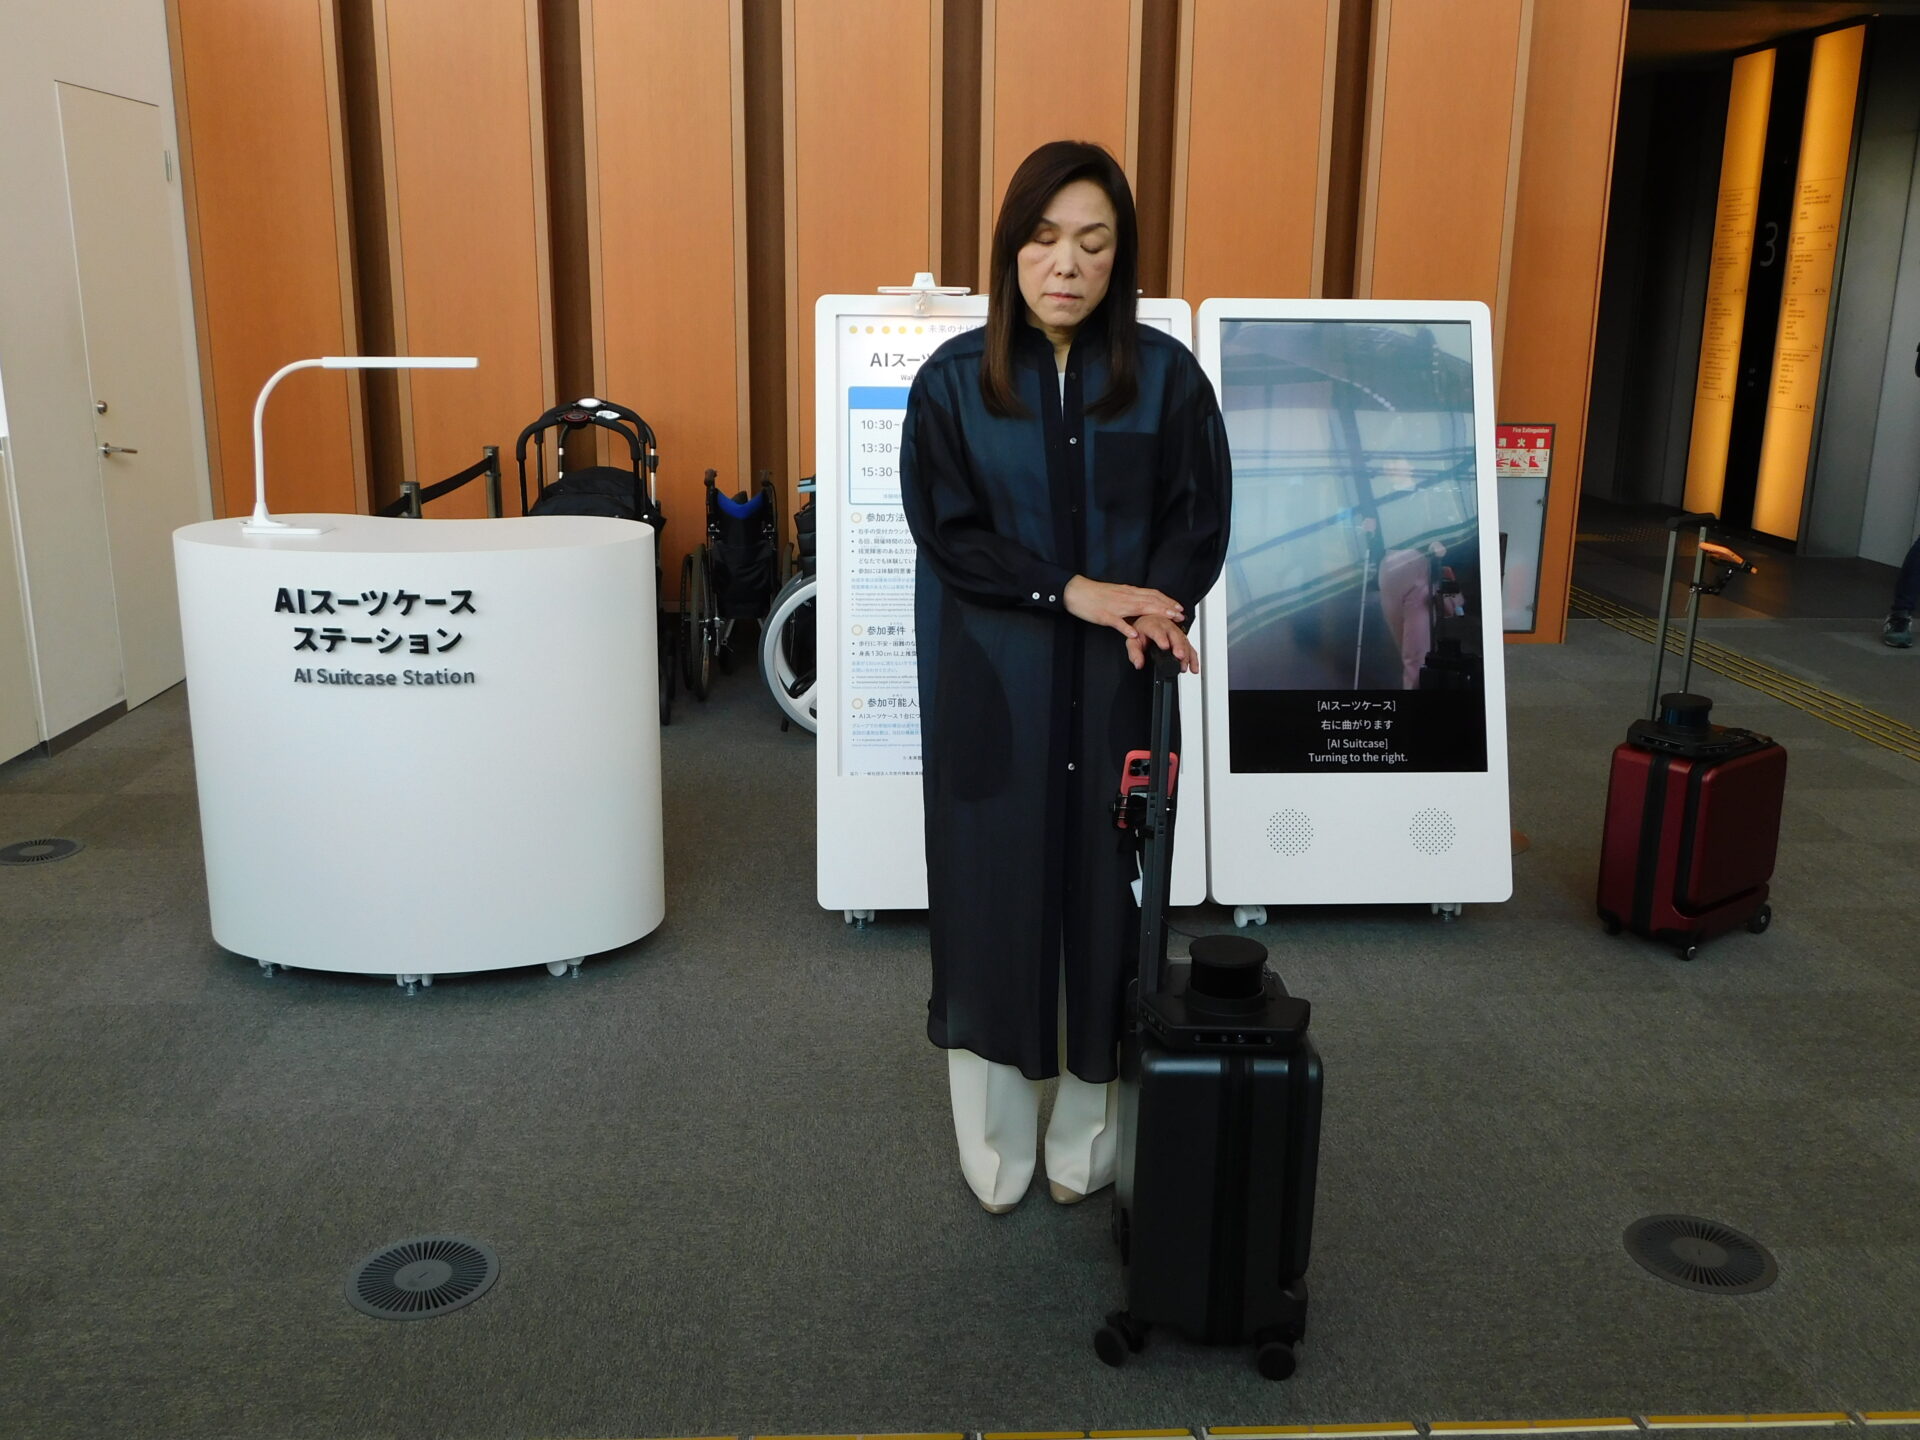 エーアイスーツケースステーションにいる、浅川館長とエーアイスーツケースの写真。エスカレーターをのぼって3階にすすみ、ひだりがわにあります